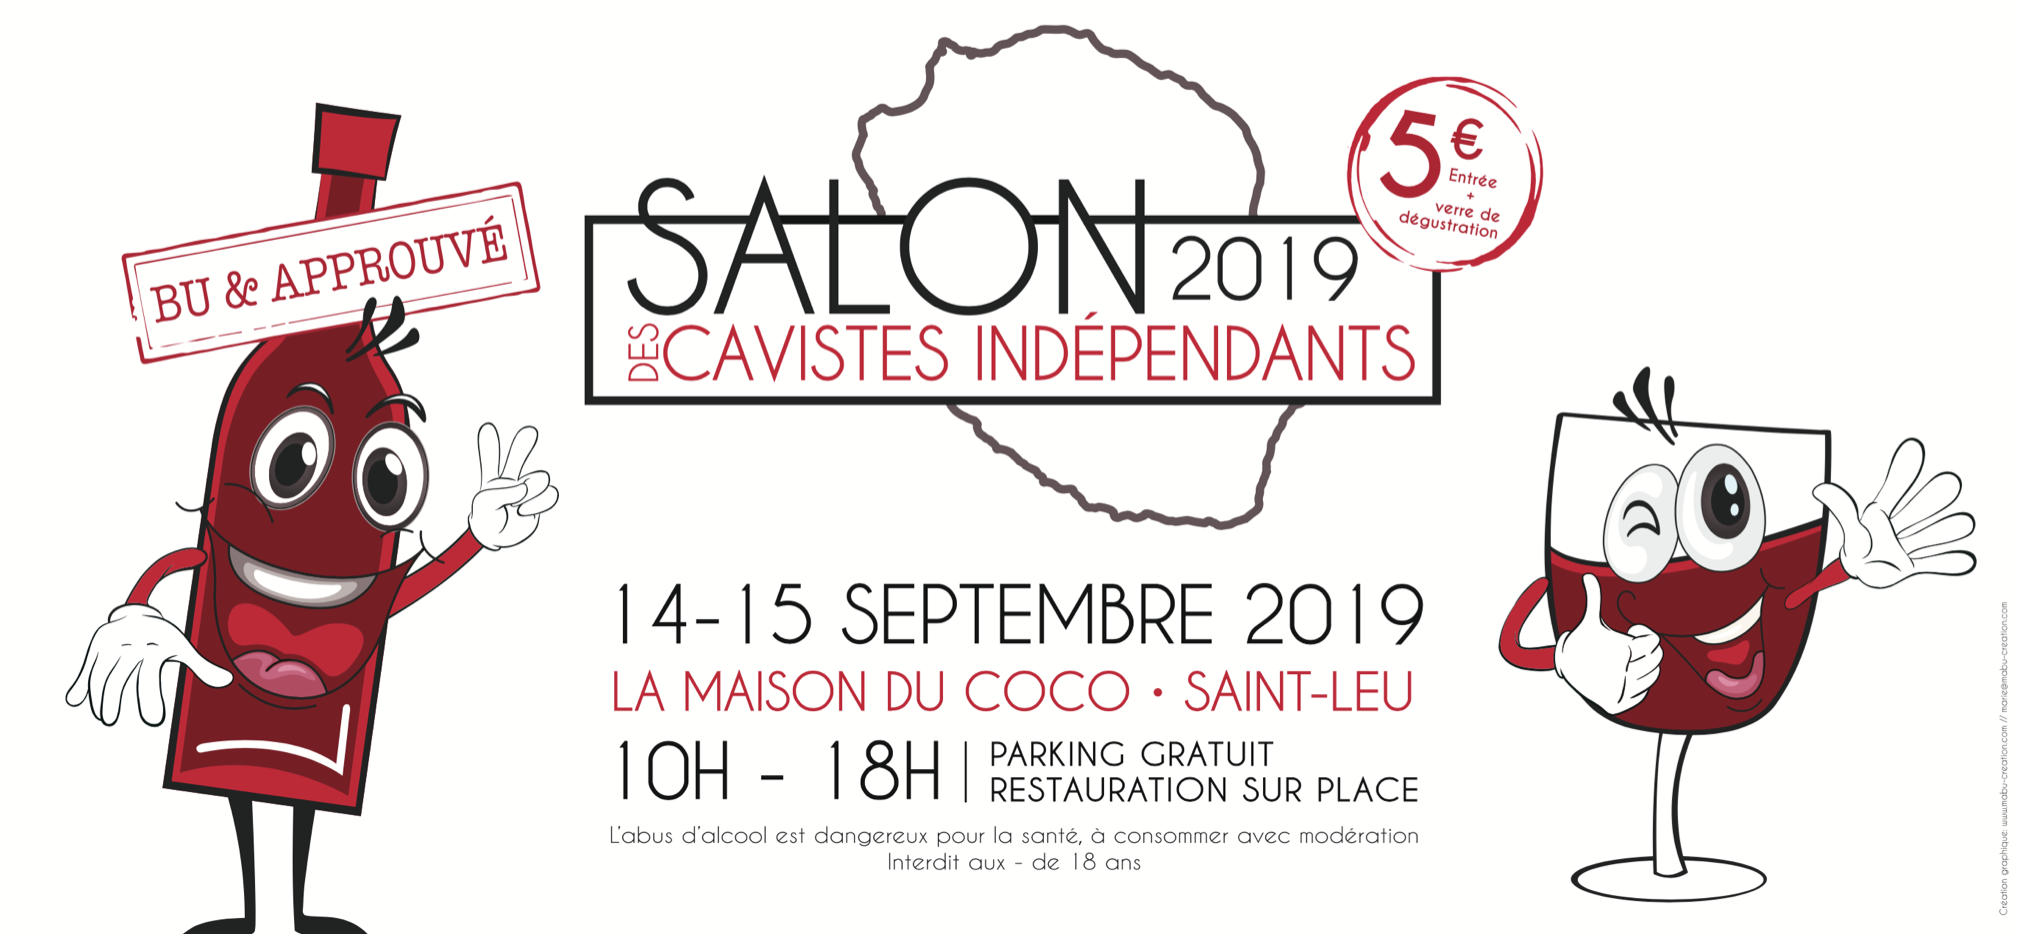 Le Salon des Cavistes Indépendants en septembre à Saint-Leu